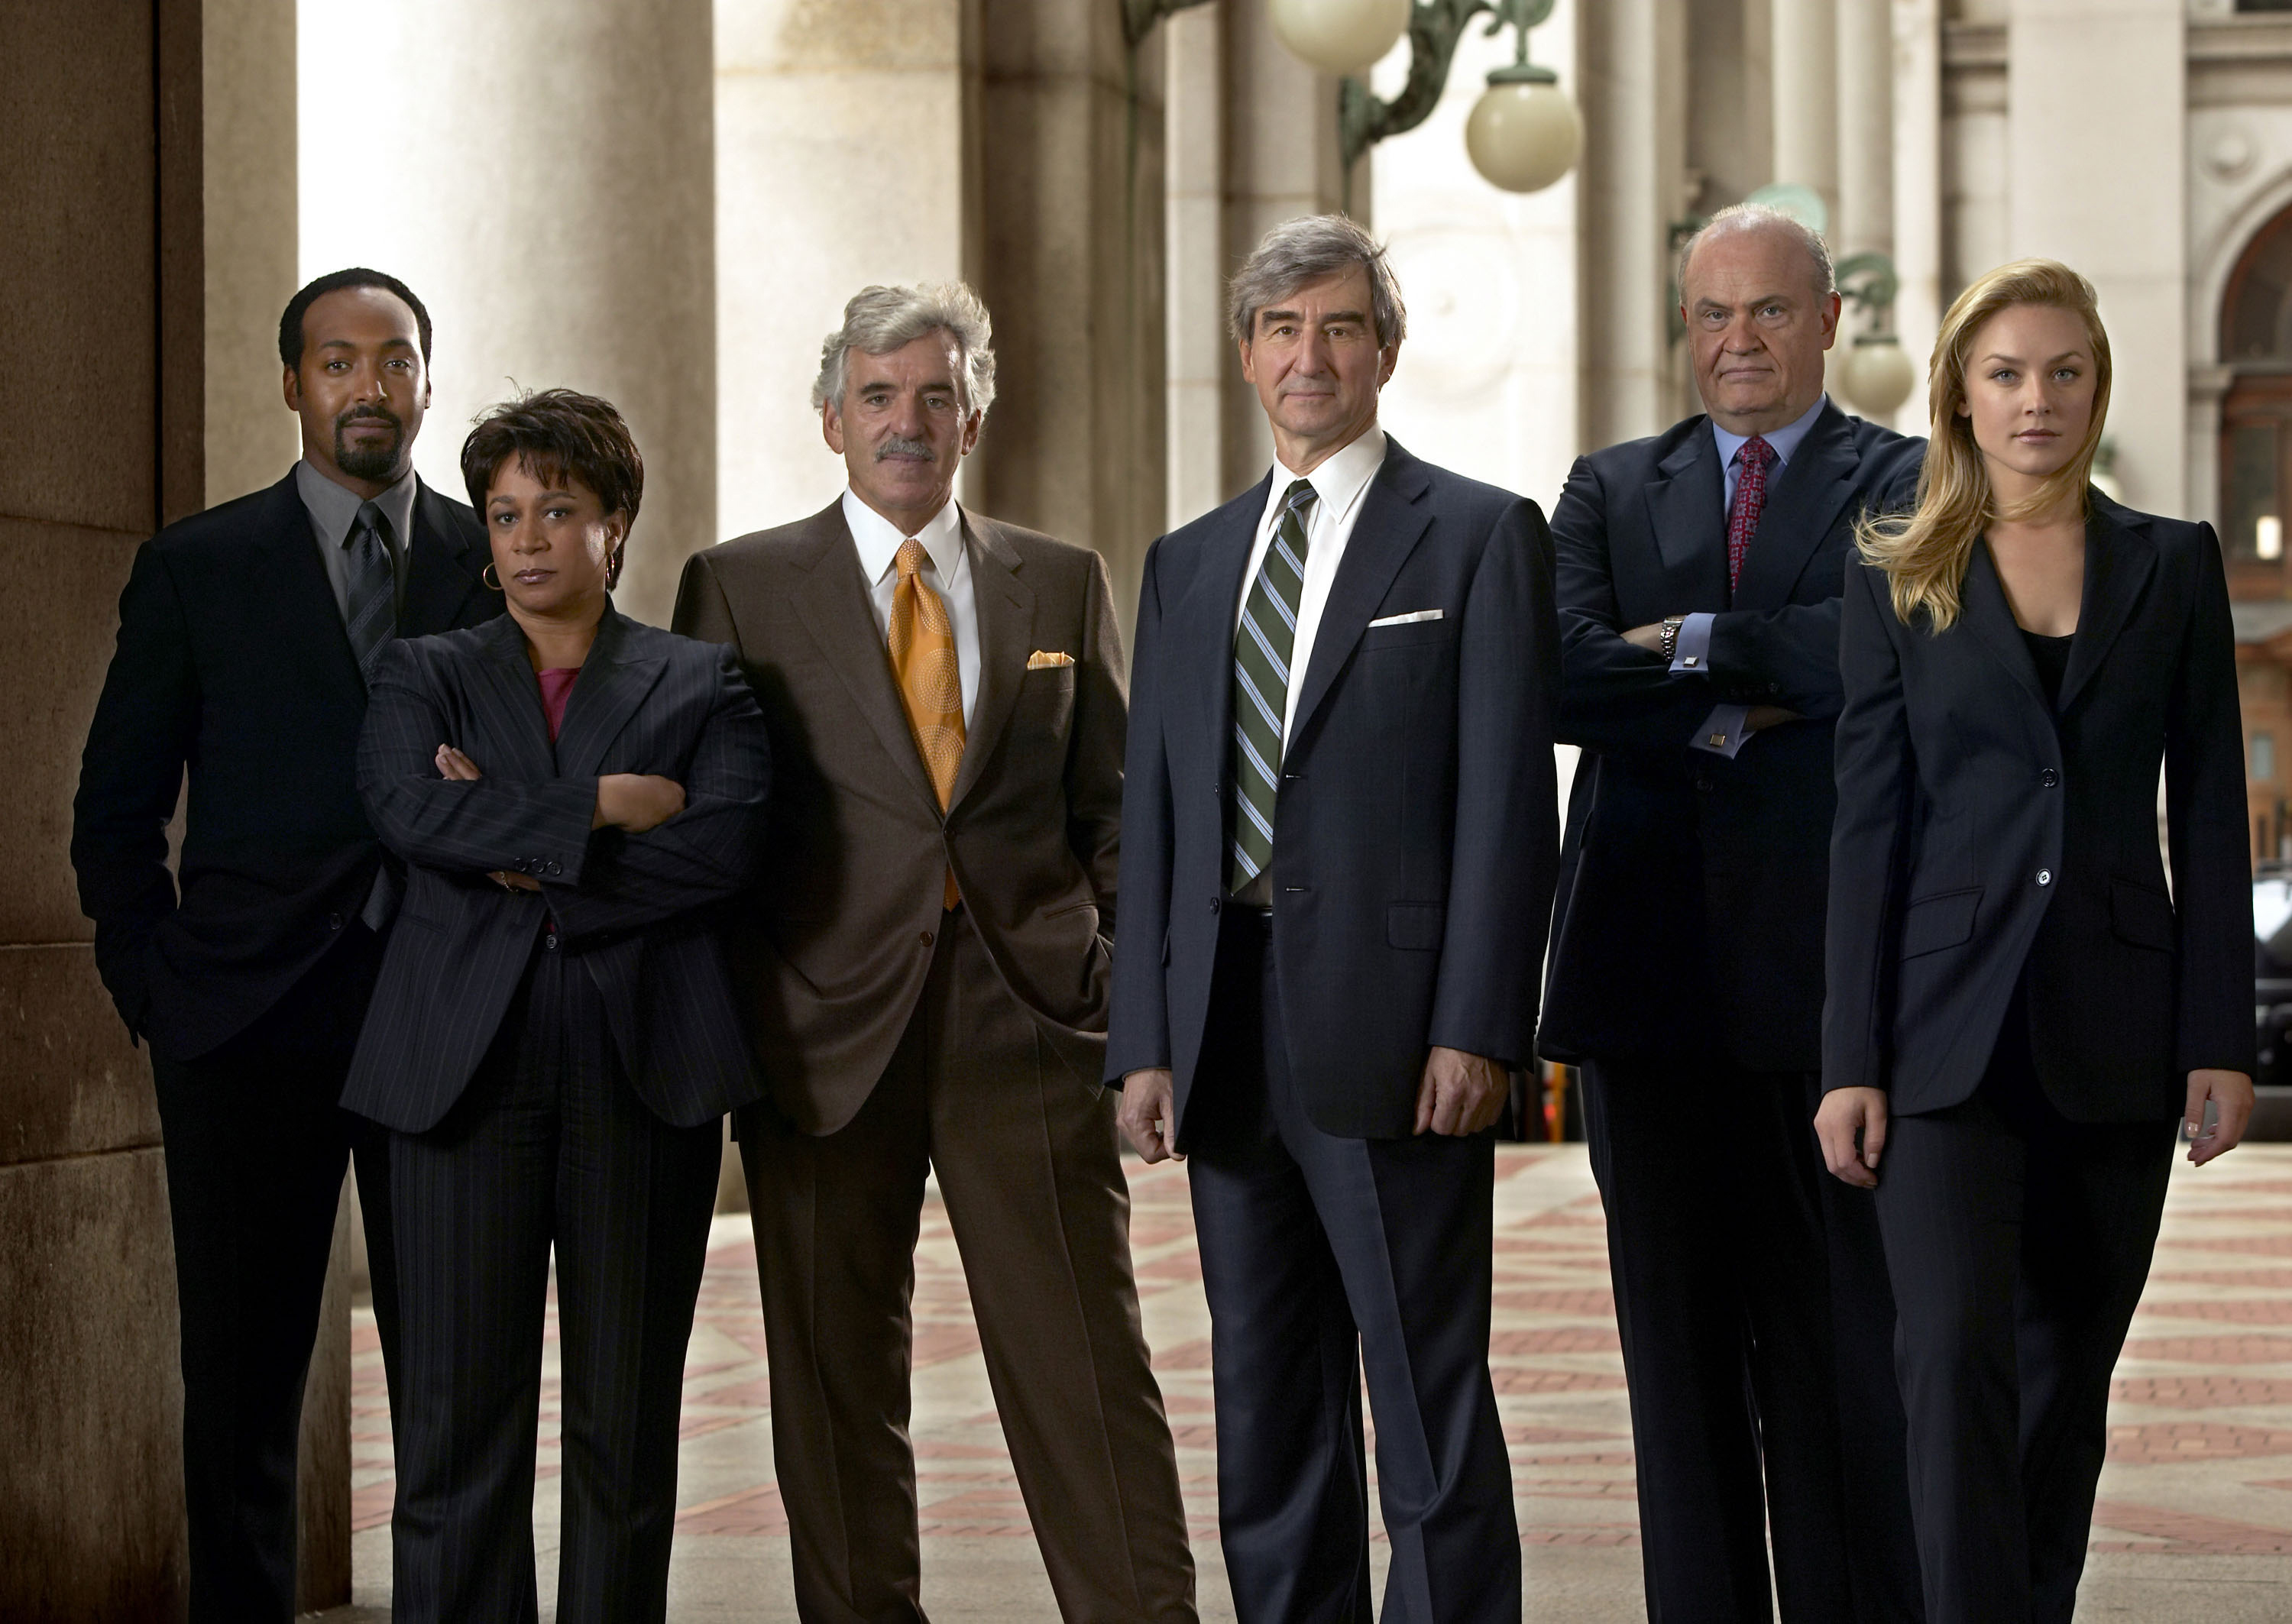 Fotograma de la serie de televisin "Ley y orden".